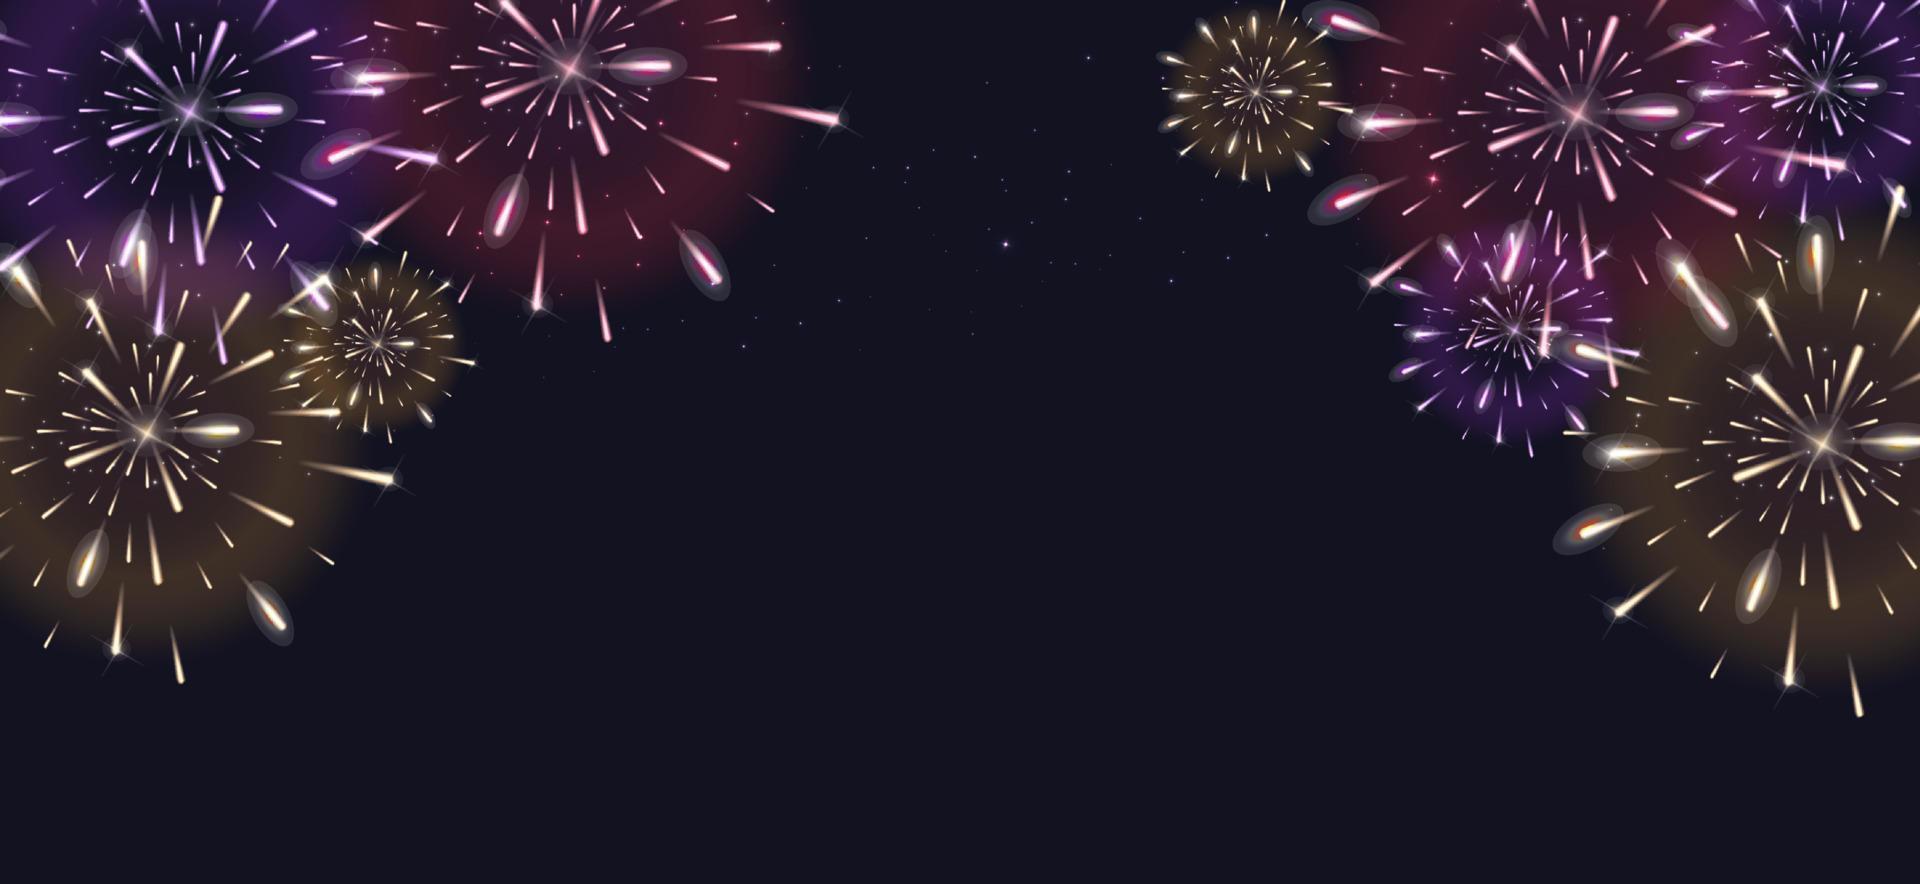 Urlaub Feuerwerk Hintergrund. Vektor Illustration